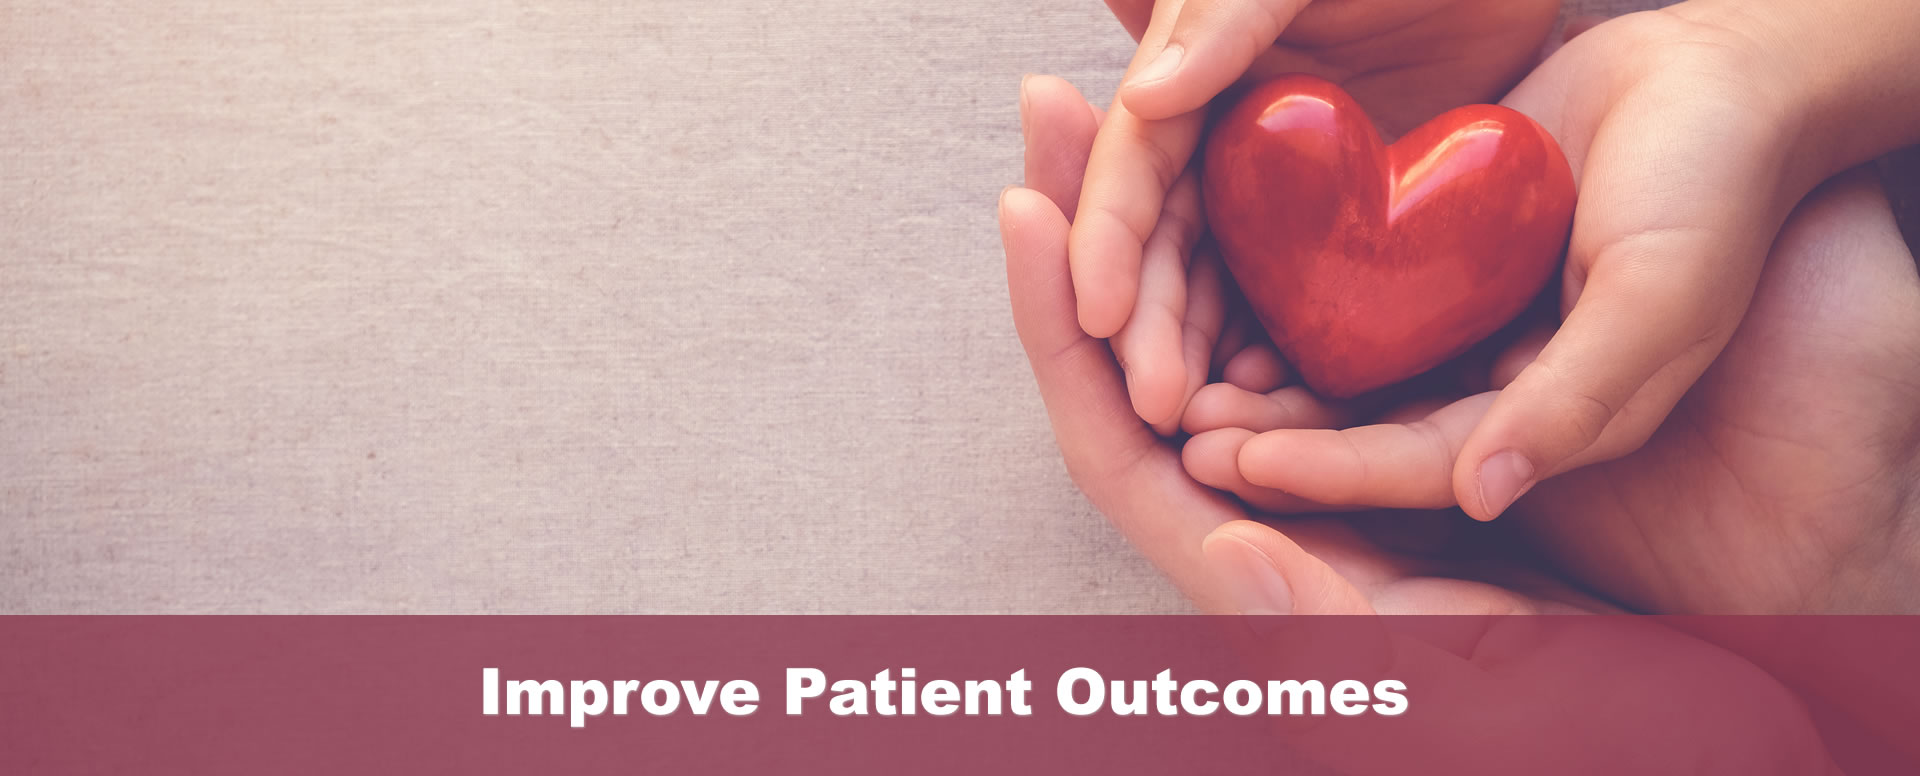 Improve Patient Outcomes